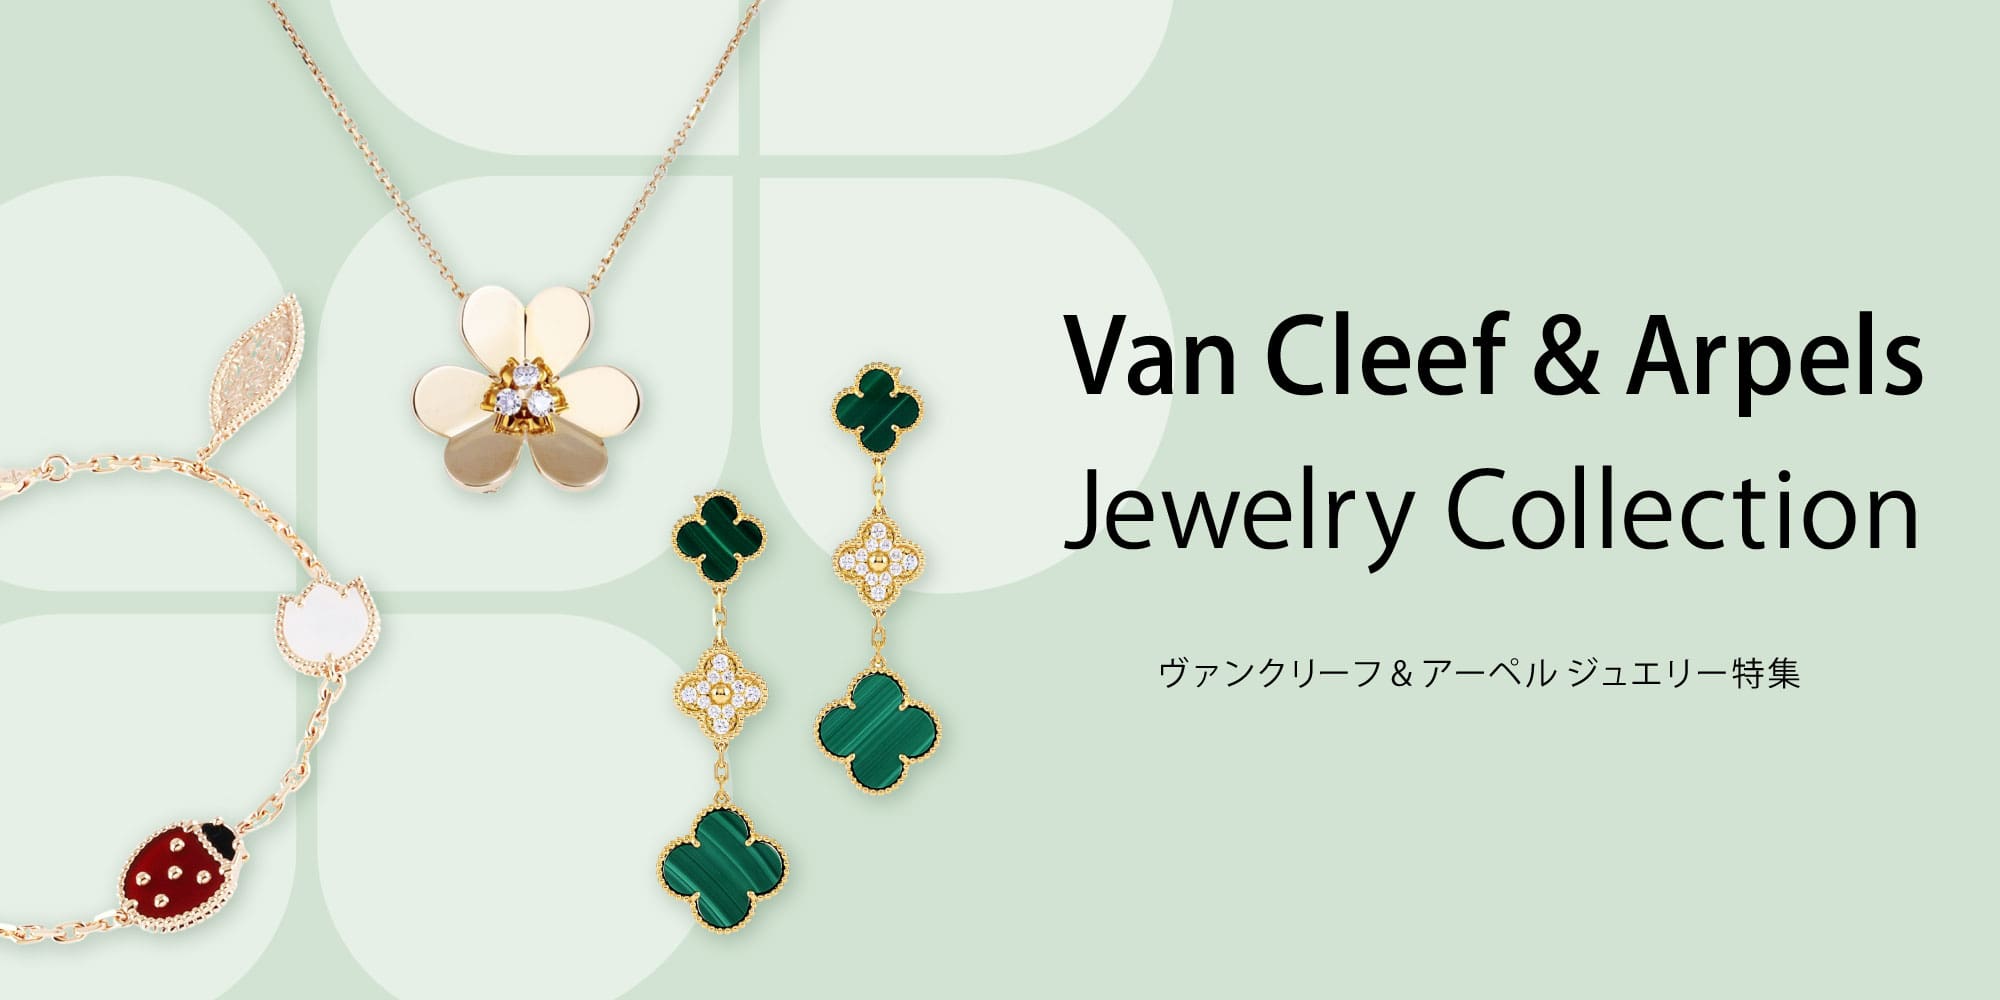 Van Cleef & Arpels Jewelry Special Banner PC